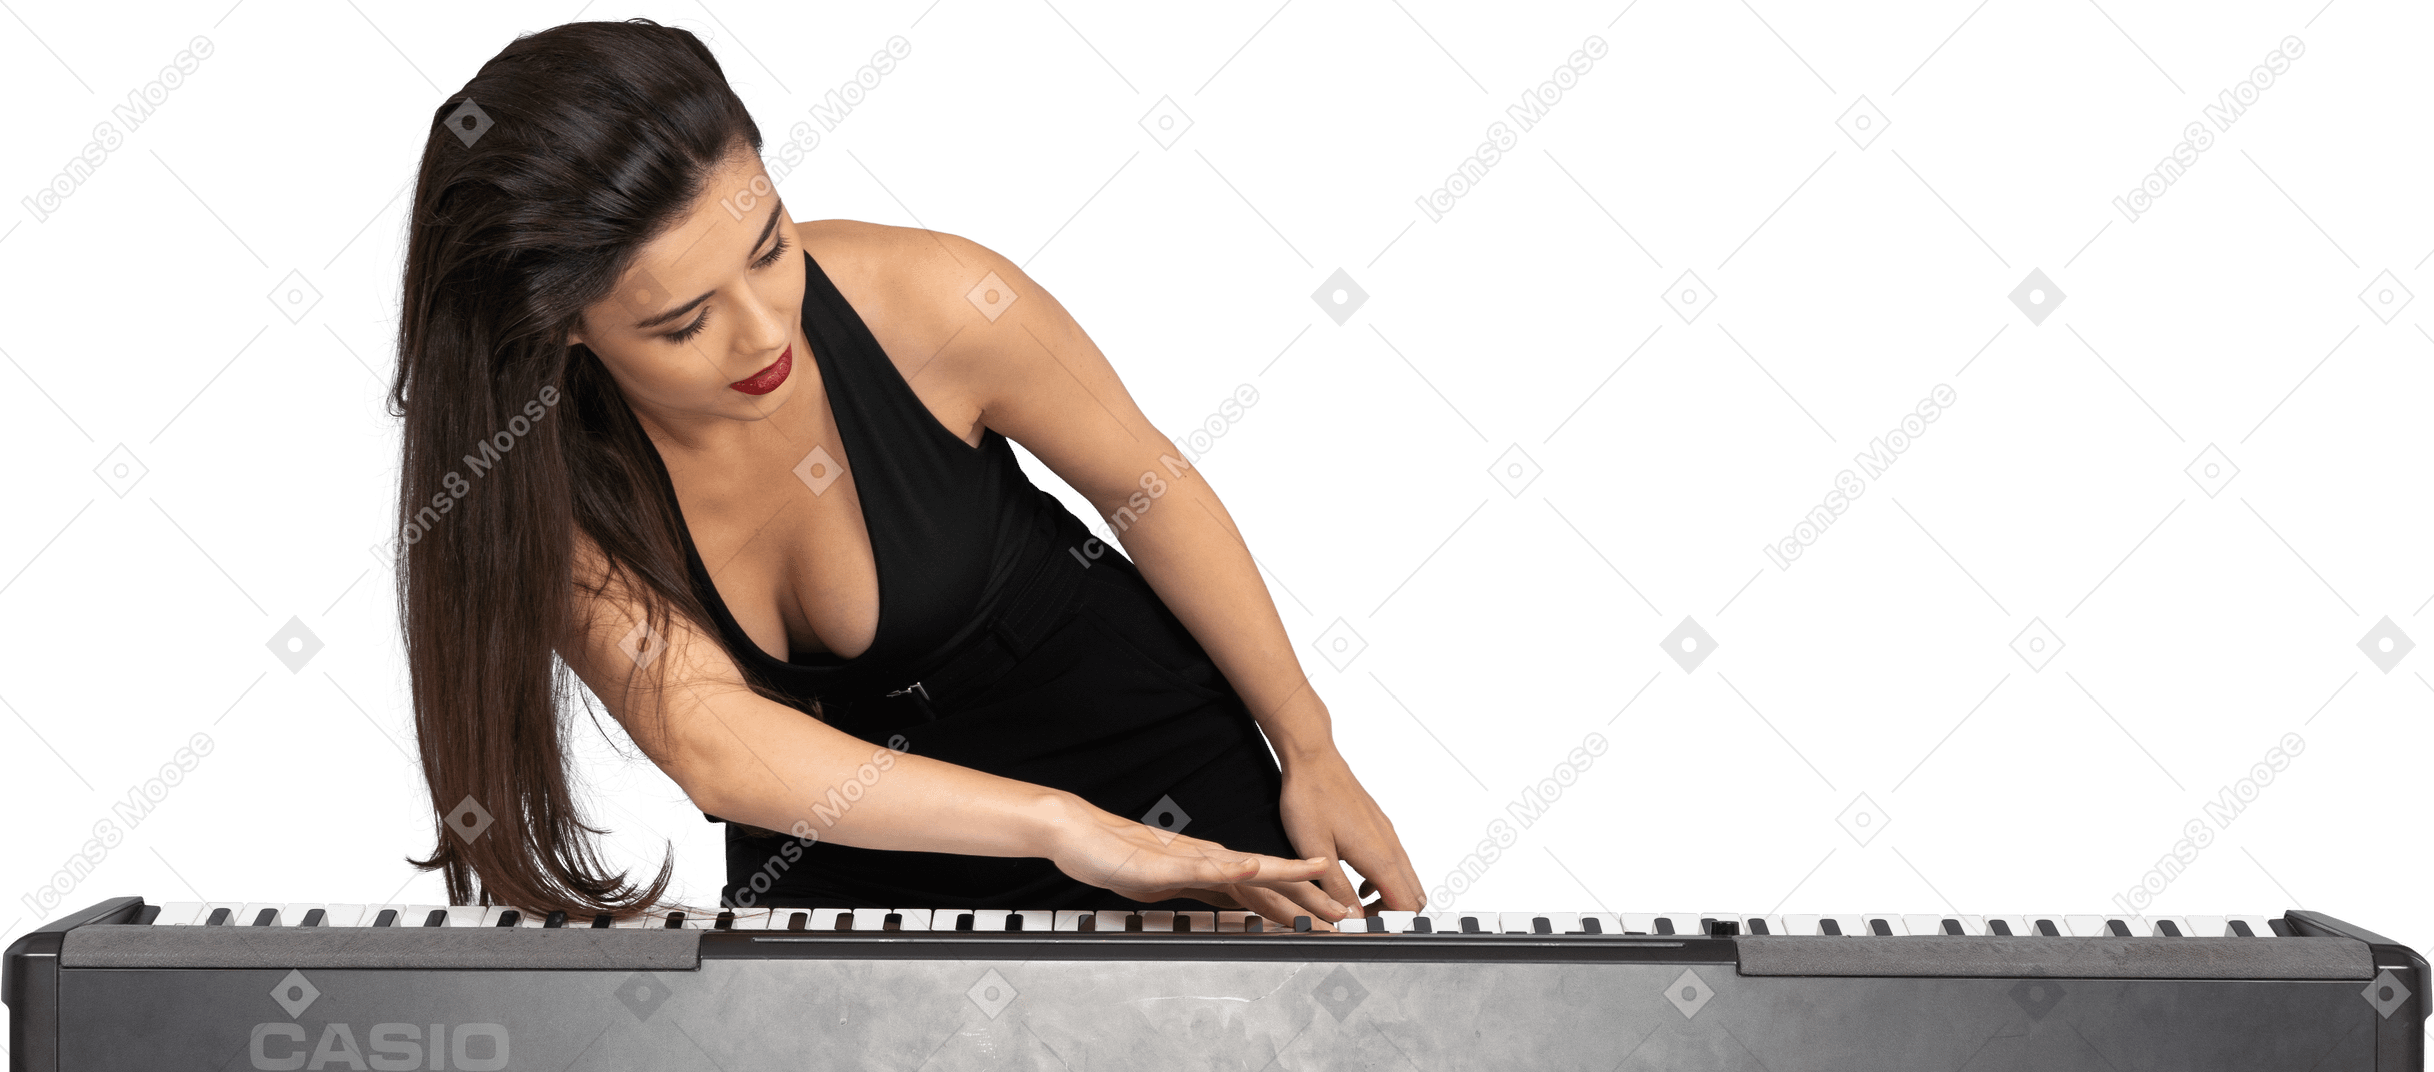 Vue de face d'une jeune femme en robe noire mettant sa main sur le clavier